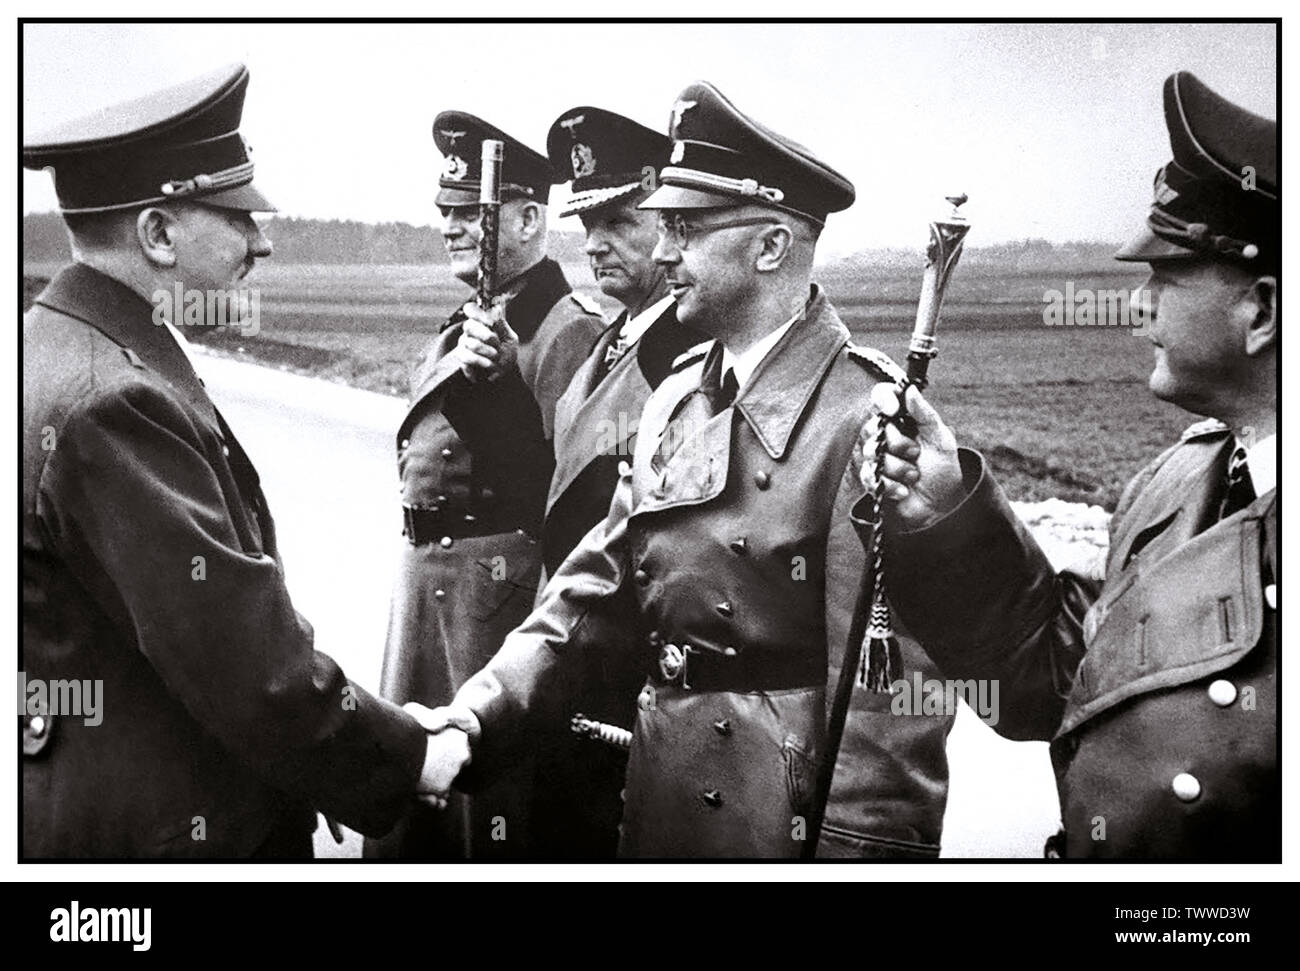 Vintage WW2-Bild von Adolf Hitler die Hände schütteln mit dem deutschen Innenminister und Chef der SS, Heinrich Himmler, mit Grand Admiral Doenitz salutierte mit seinem naval Personal Büro- und Feldmarschall Keitel hinter dem Zweiten Weltkrieg Welt II. Stockfoto